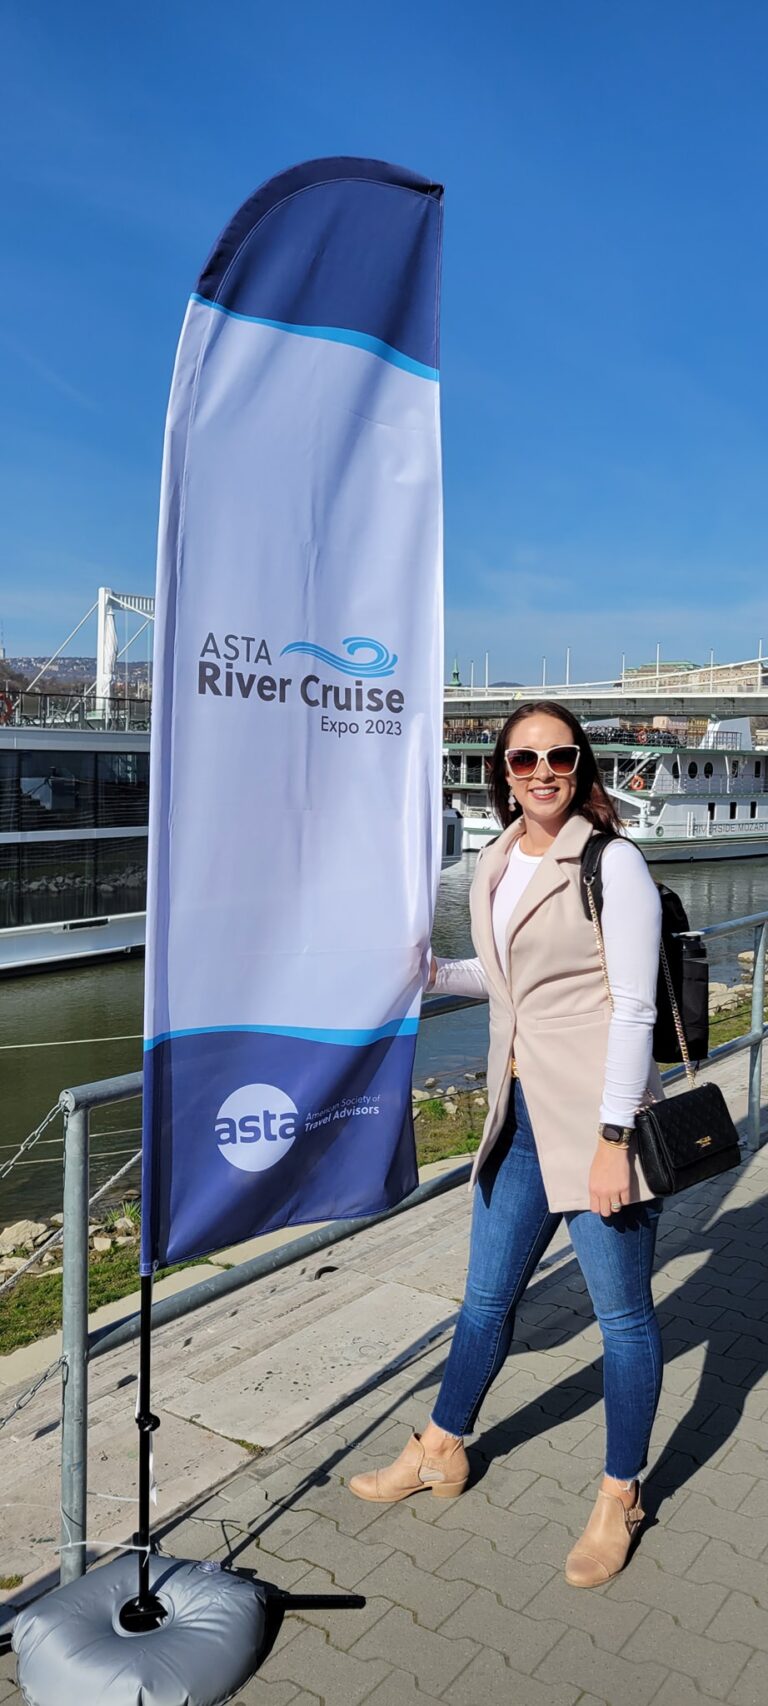 ASTA River Cruise Expo 2023